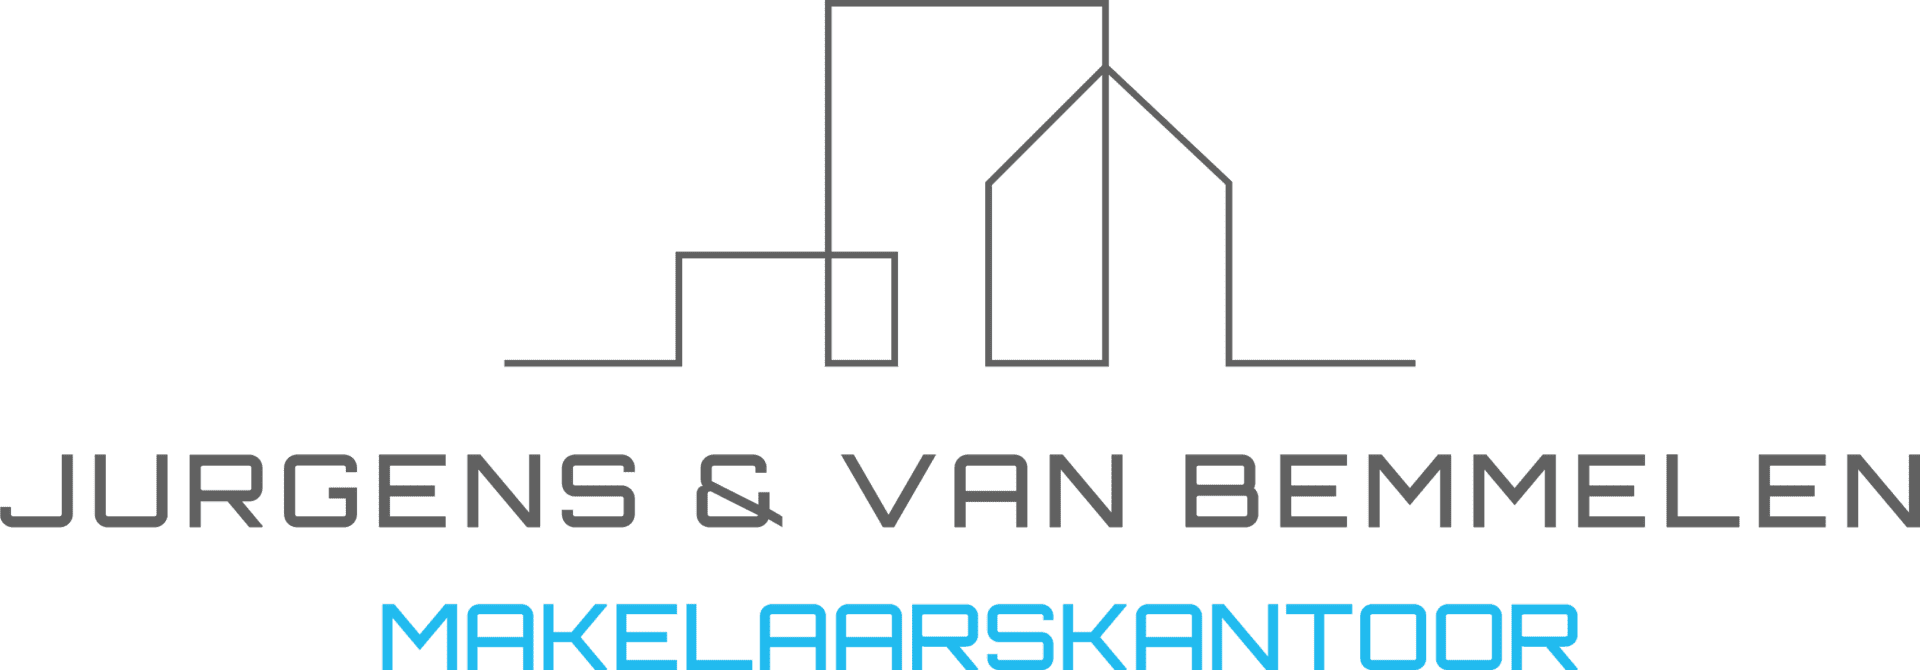 Logo Jurgens & Van Bemmelen Makelaarskantoor